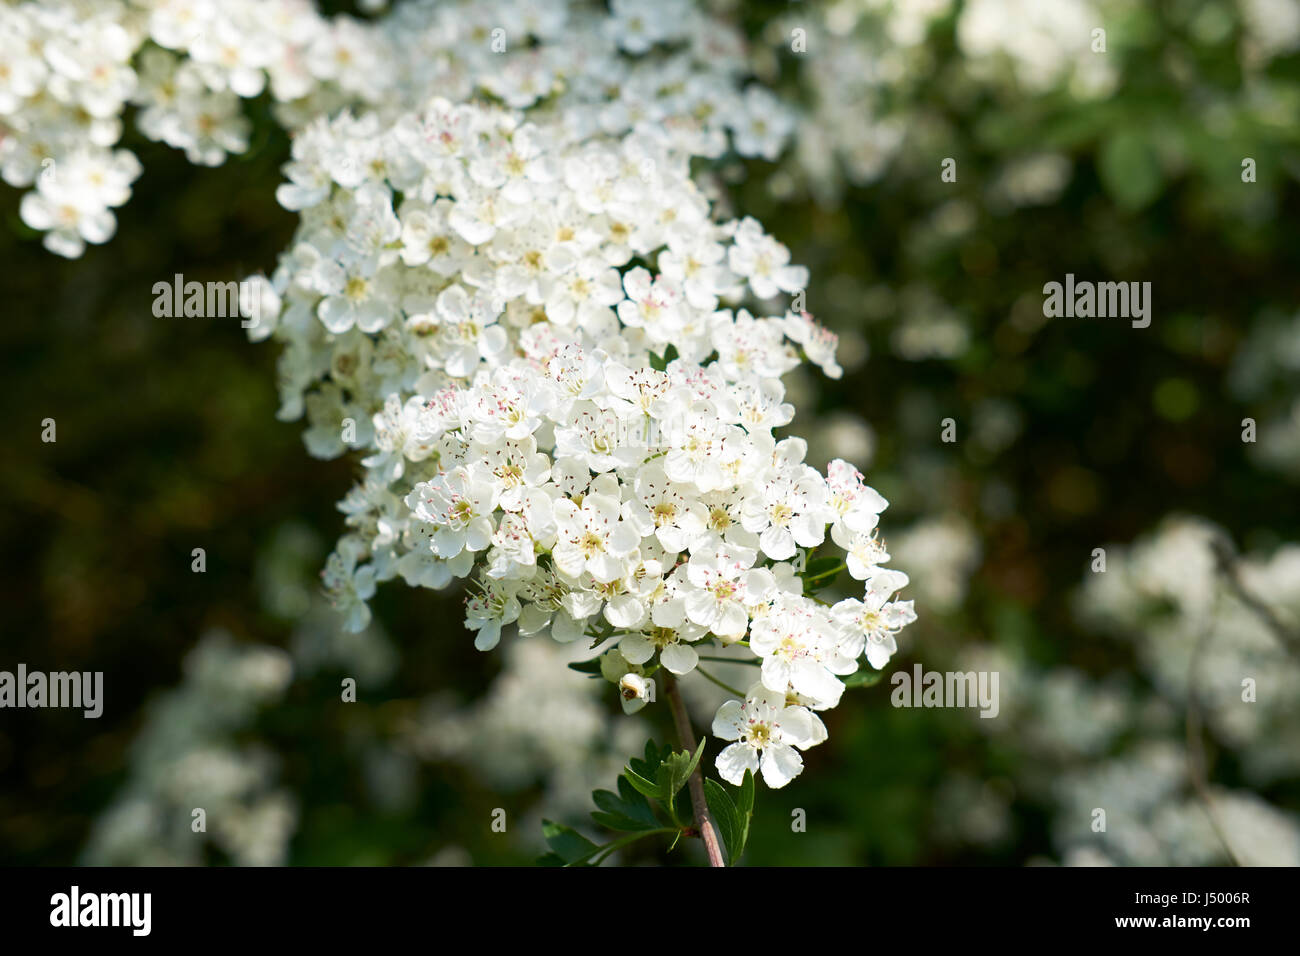 Fleur blanche de l'aubépine (Crategus monogyna) arbuste, que l'on trouve couramment dans les haies dans tout le Royaume-Uni. Banque D'Images